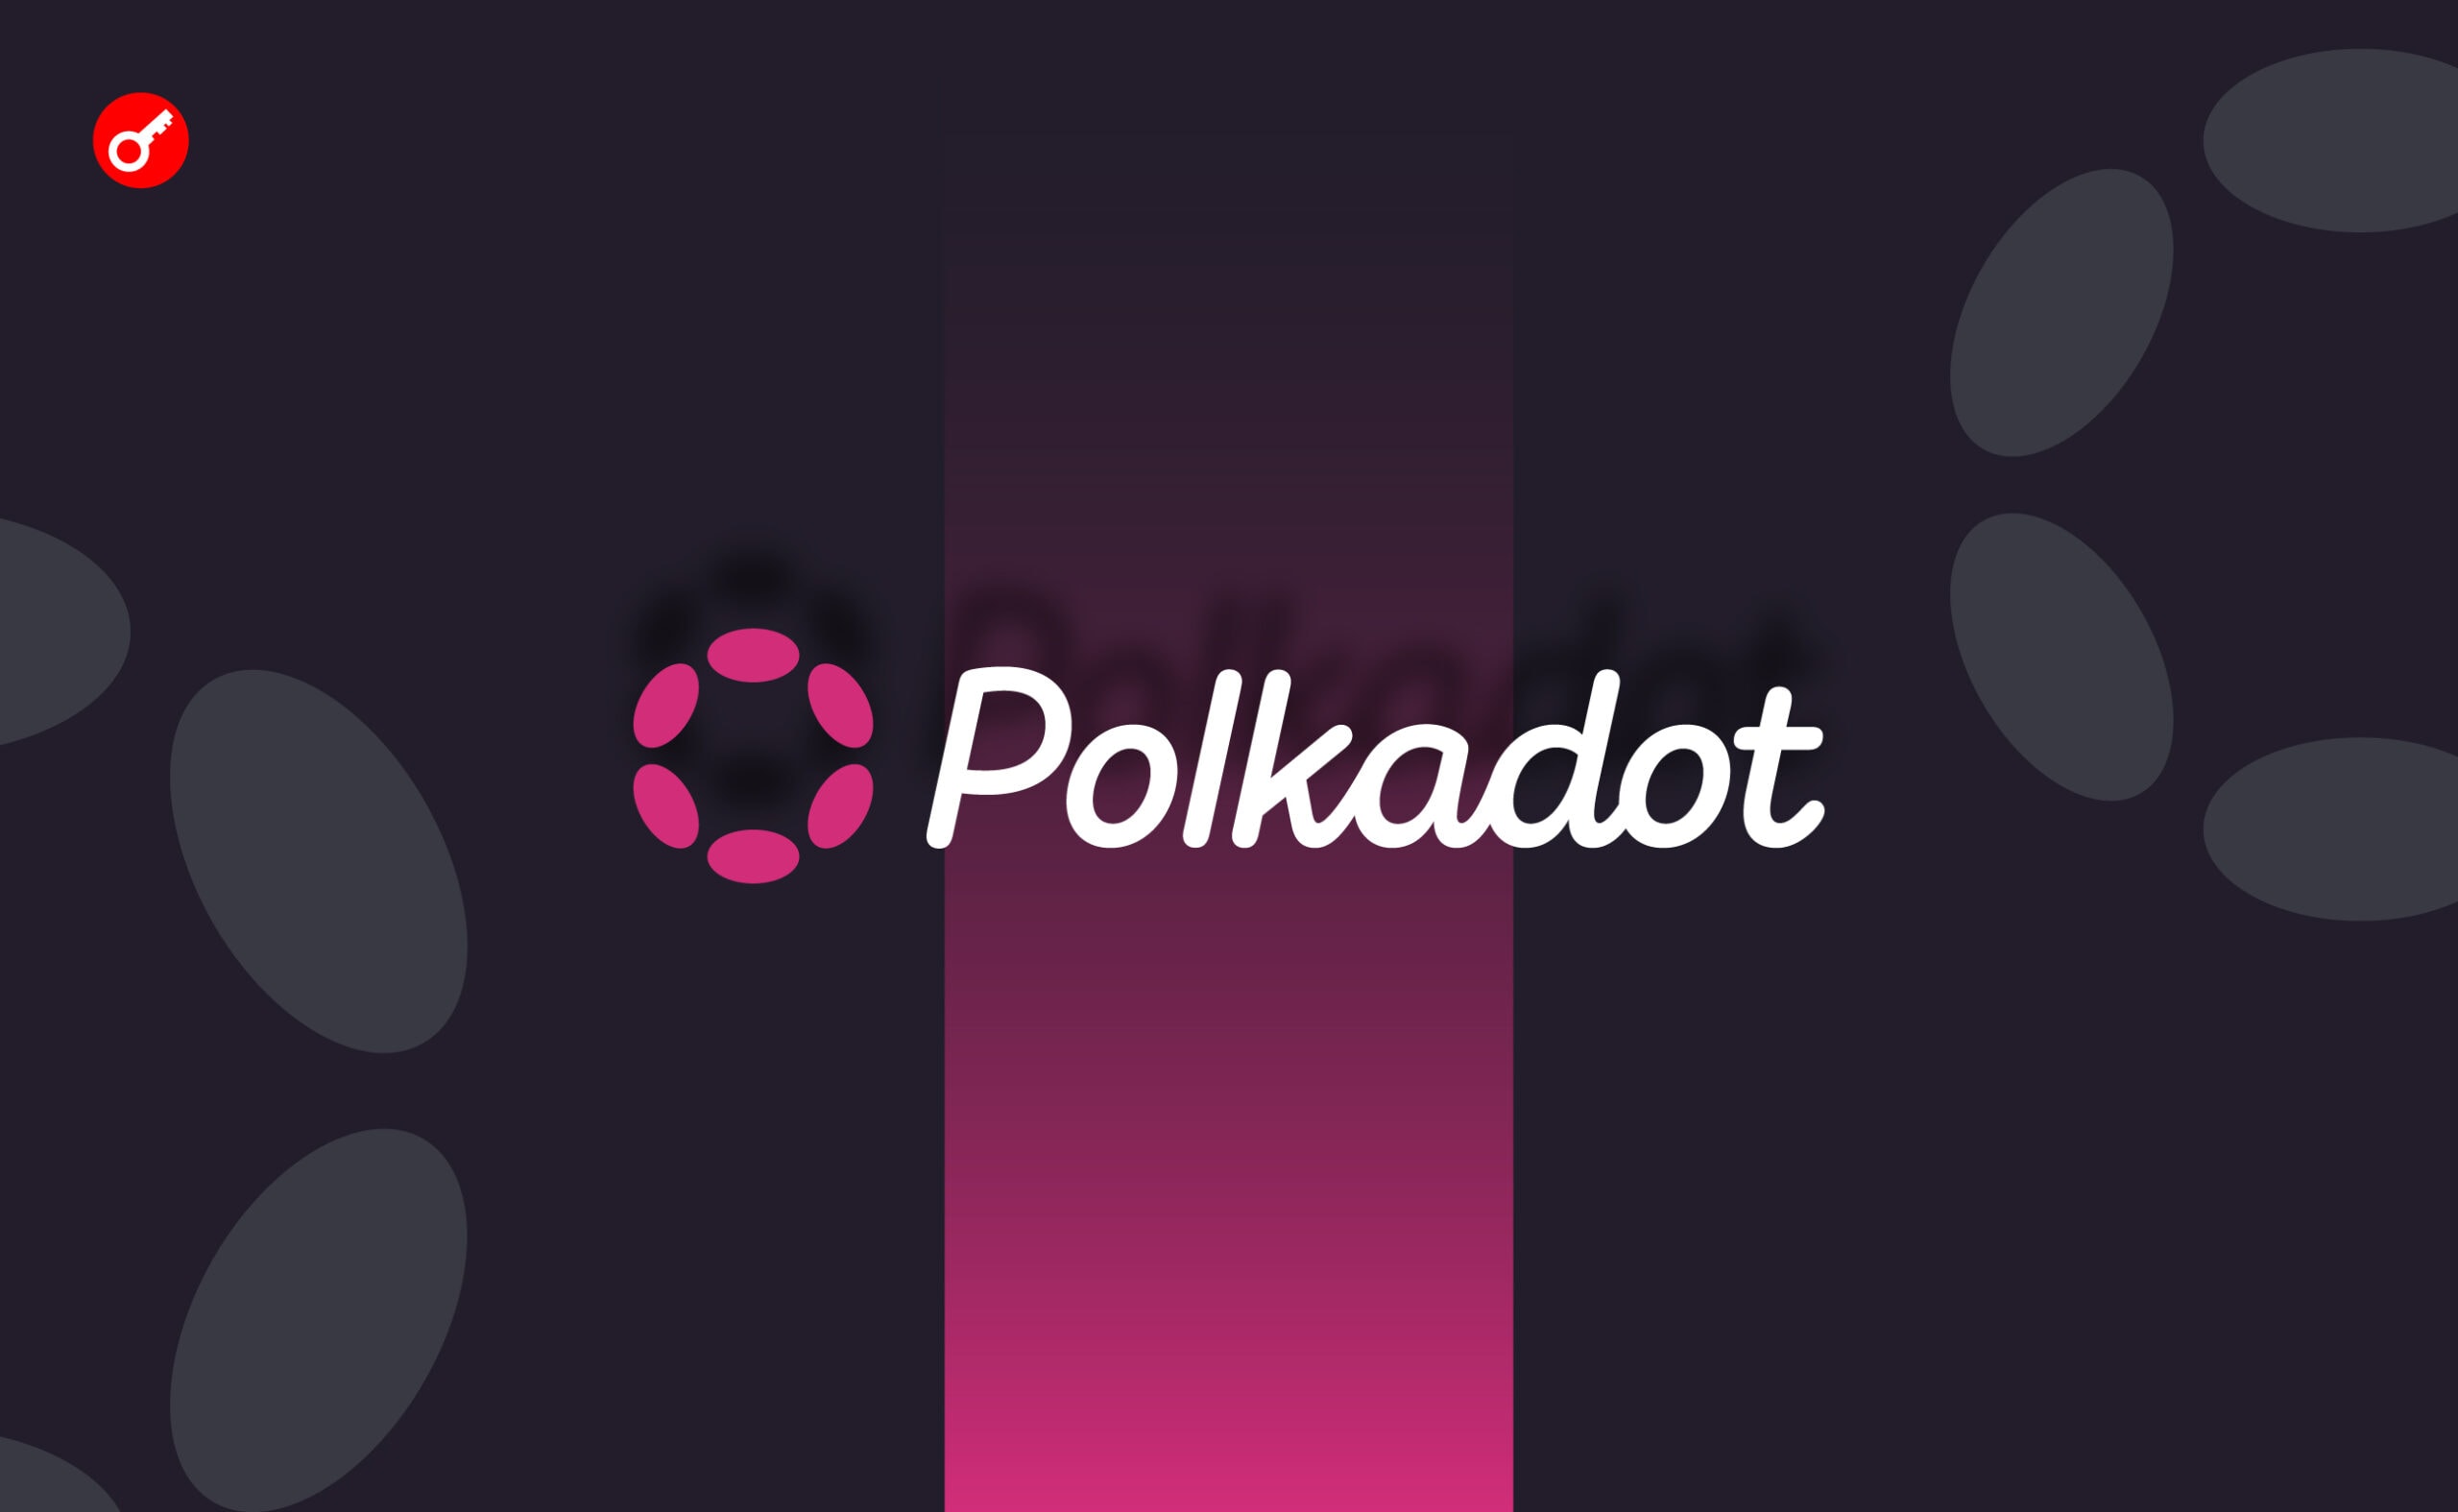 Команда Polkadot потратила $37 млн за полгода на привлечение новых пользователей. Заглавный коллаж новости.